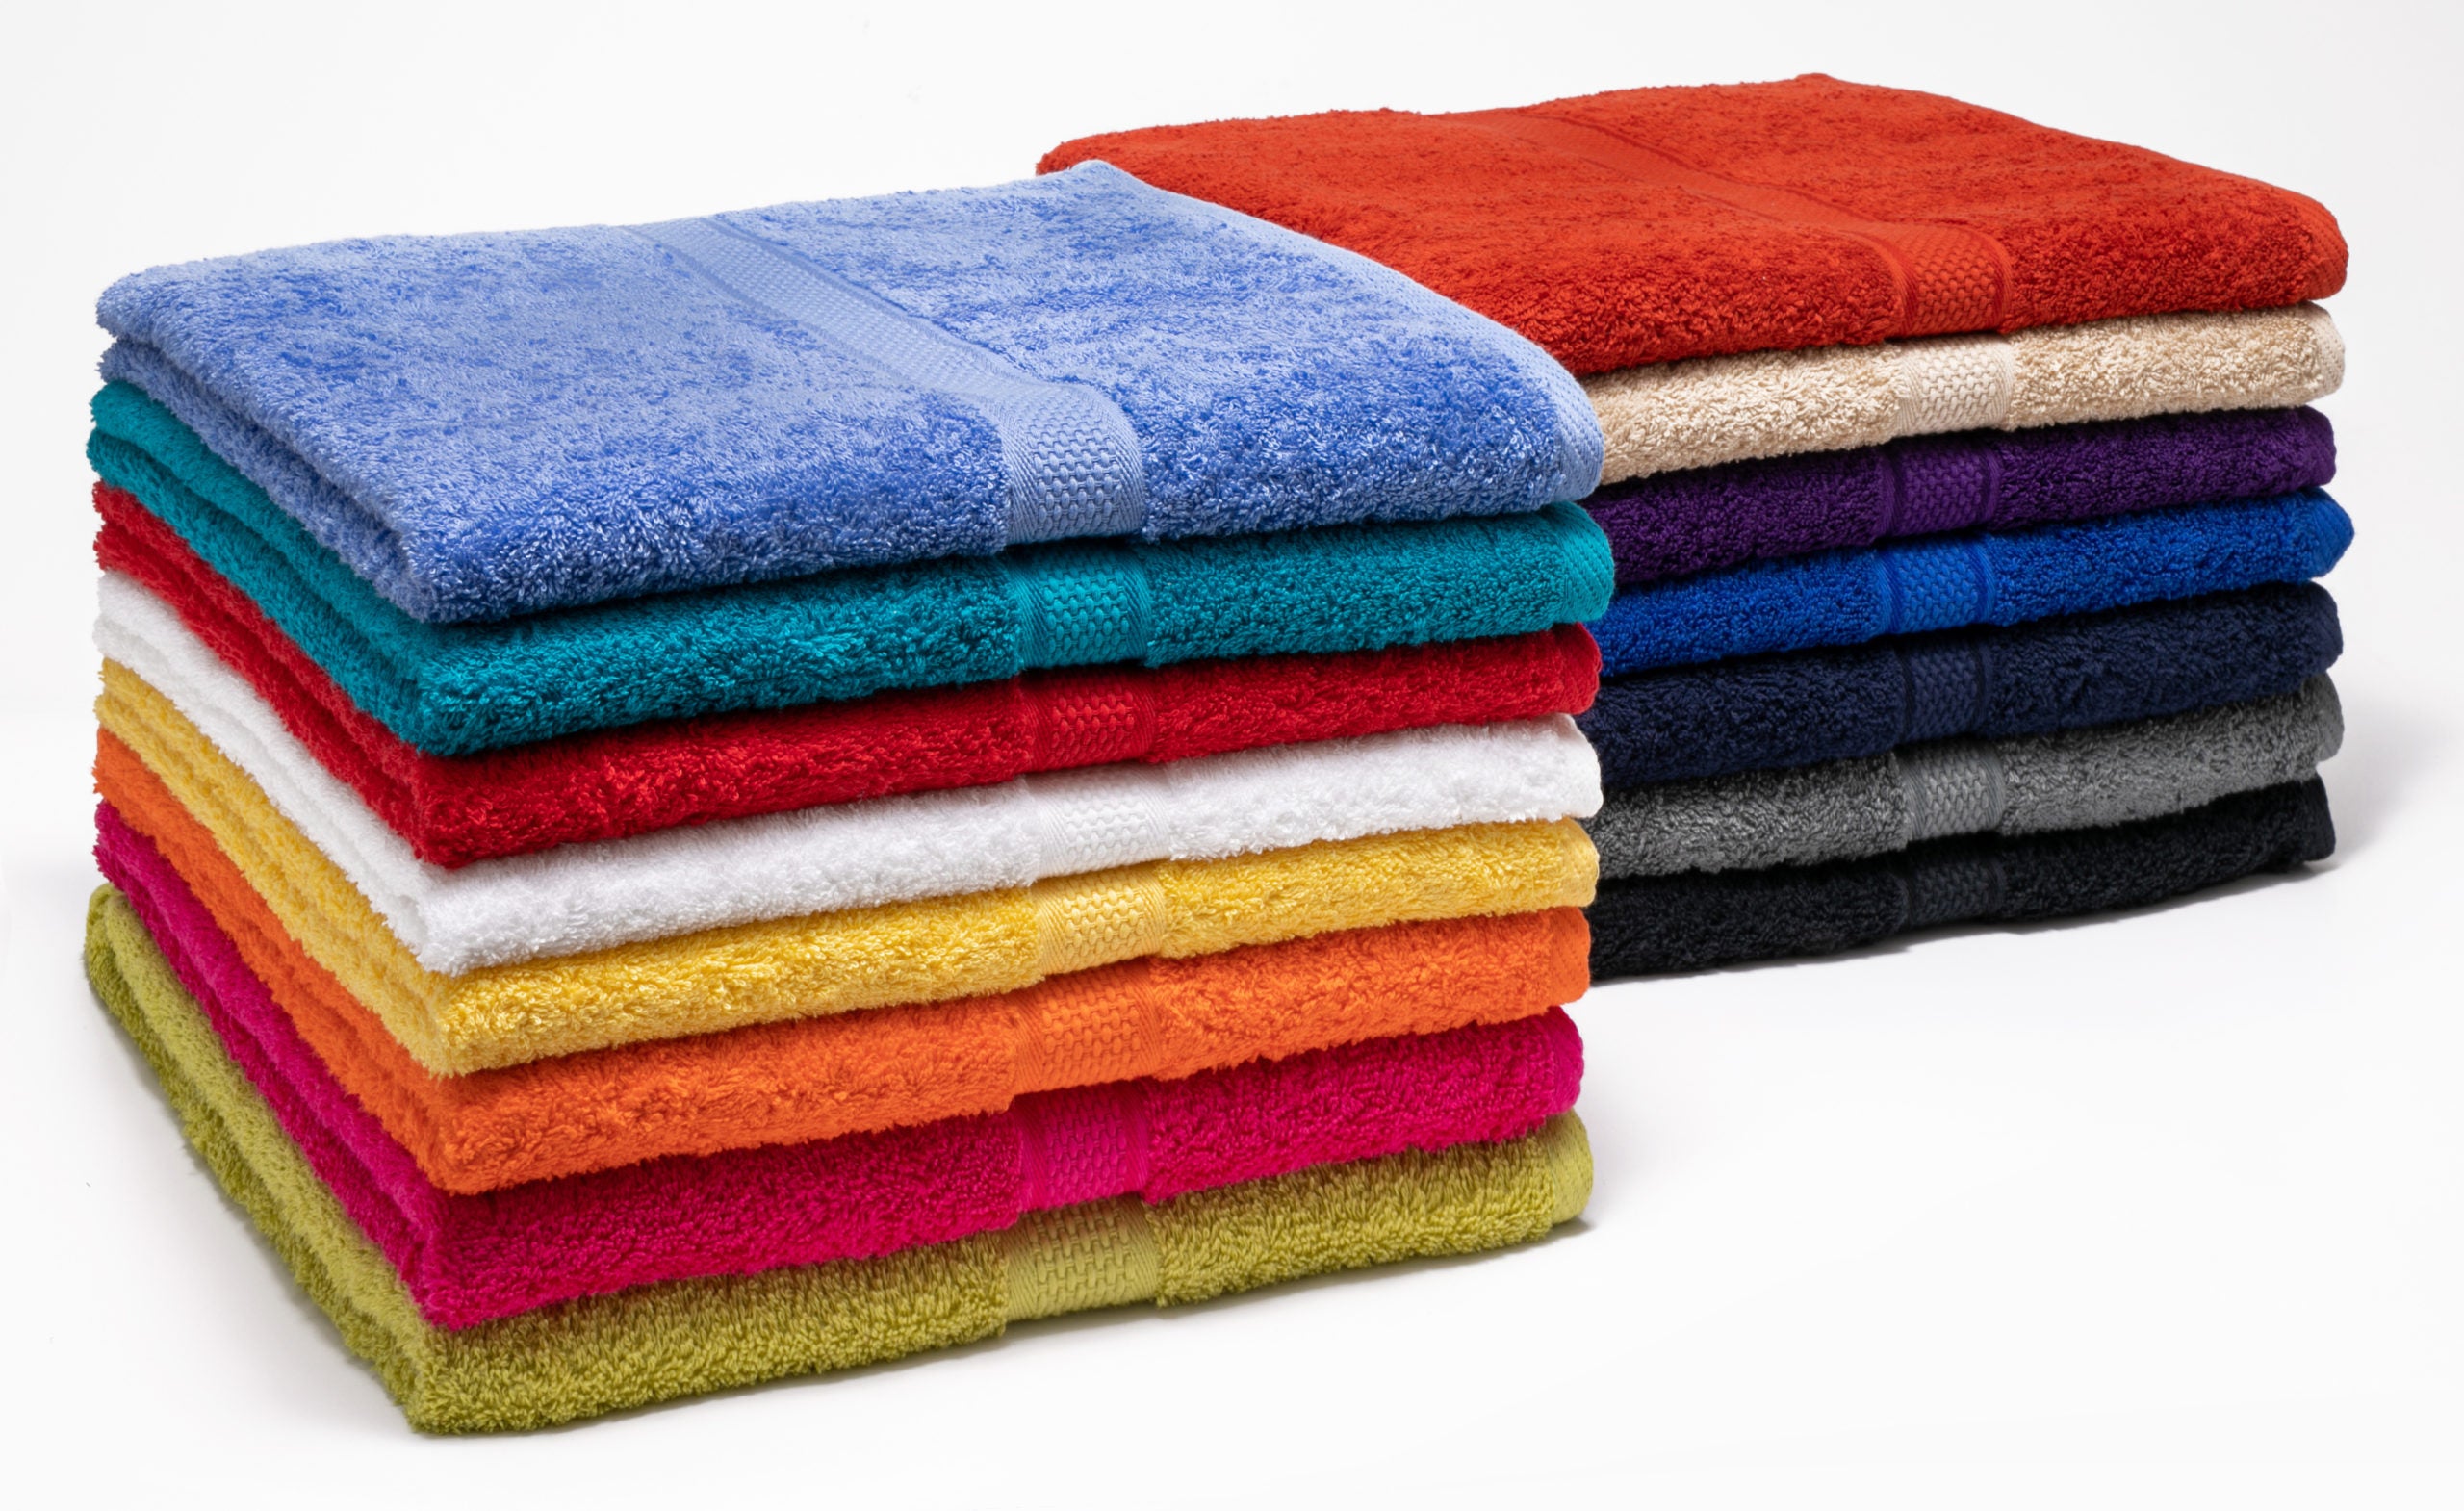 Glodina Royal Shield range - Bath Towel Size 70x130cm